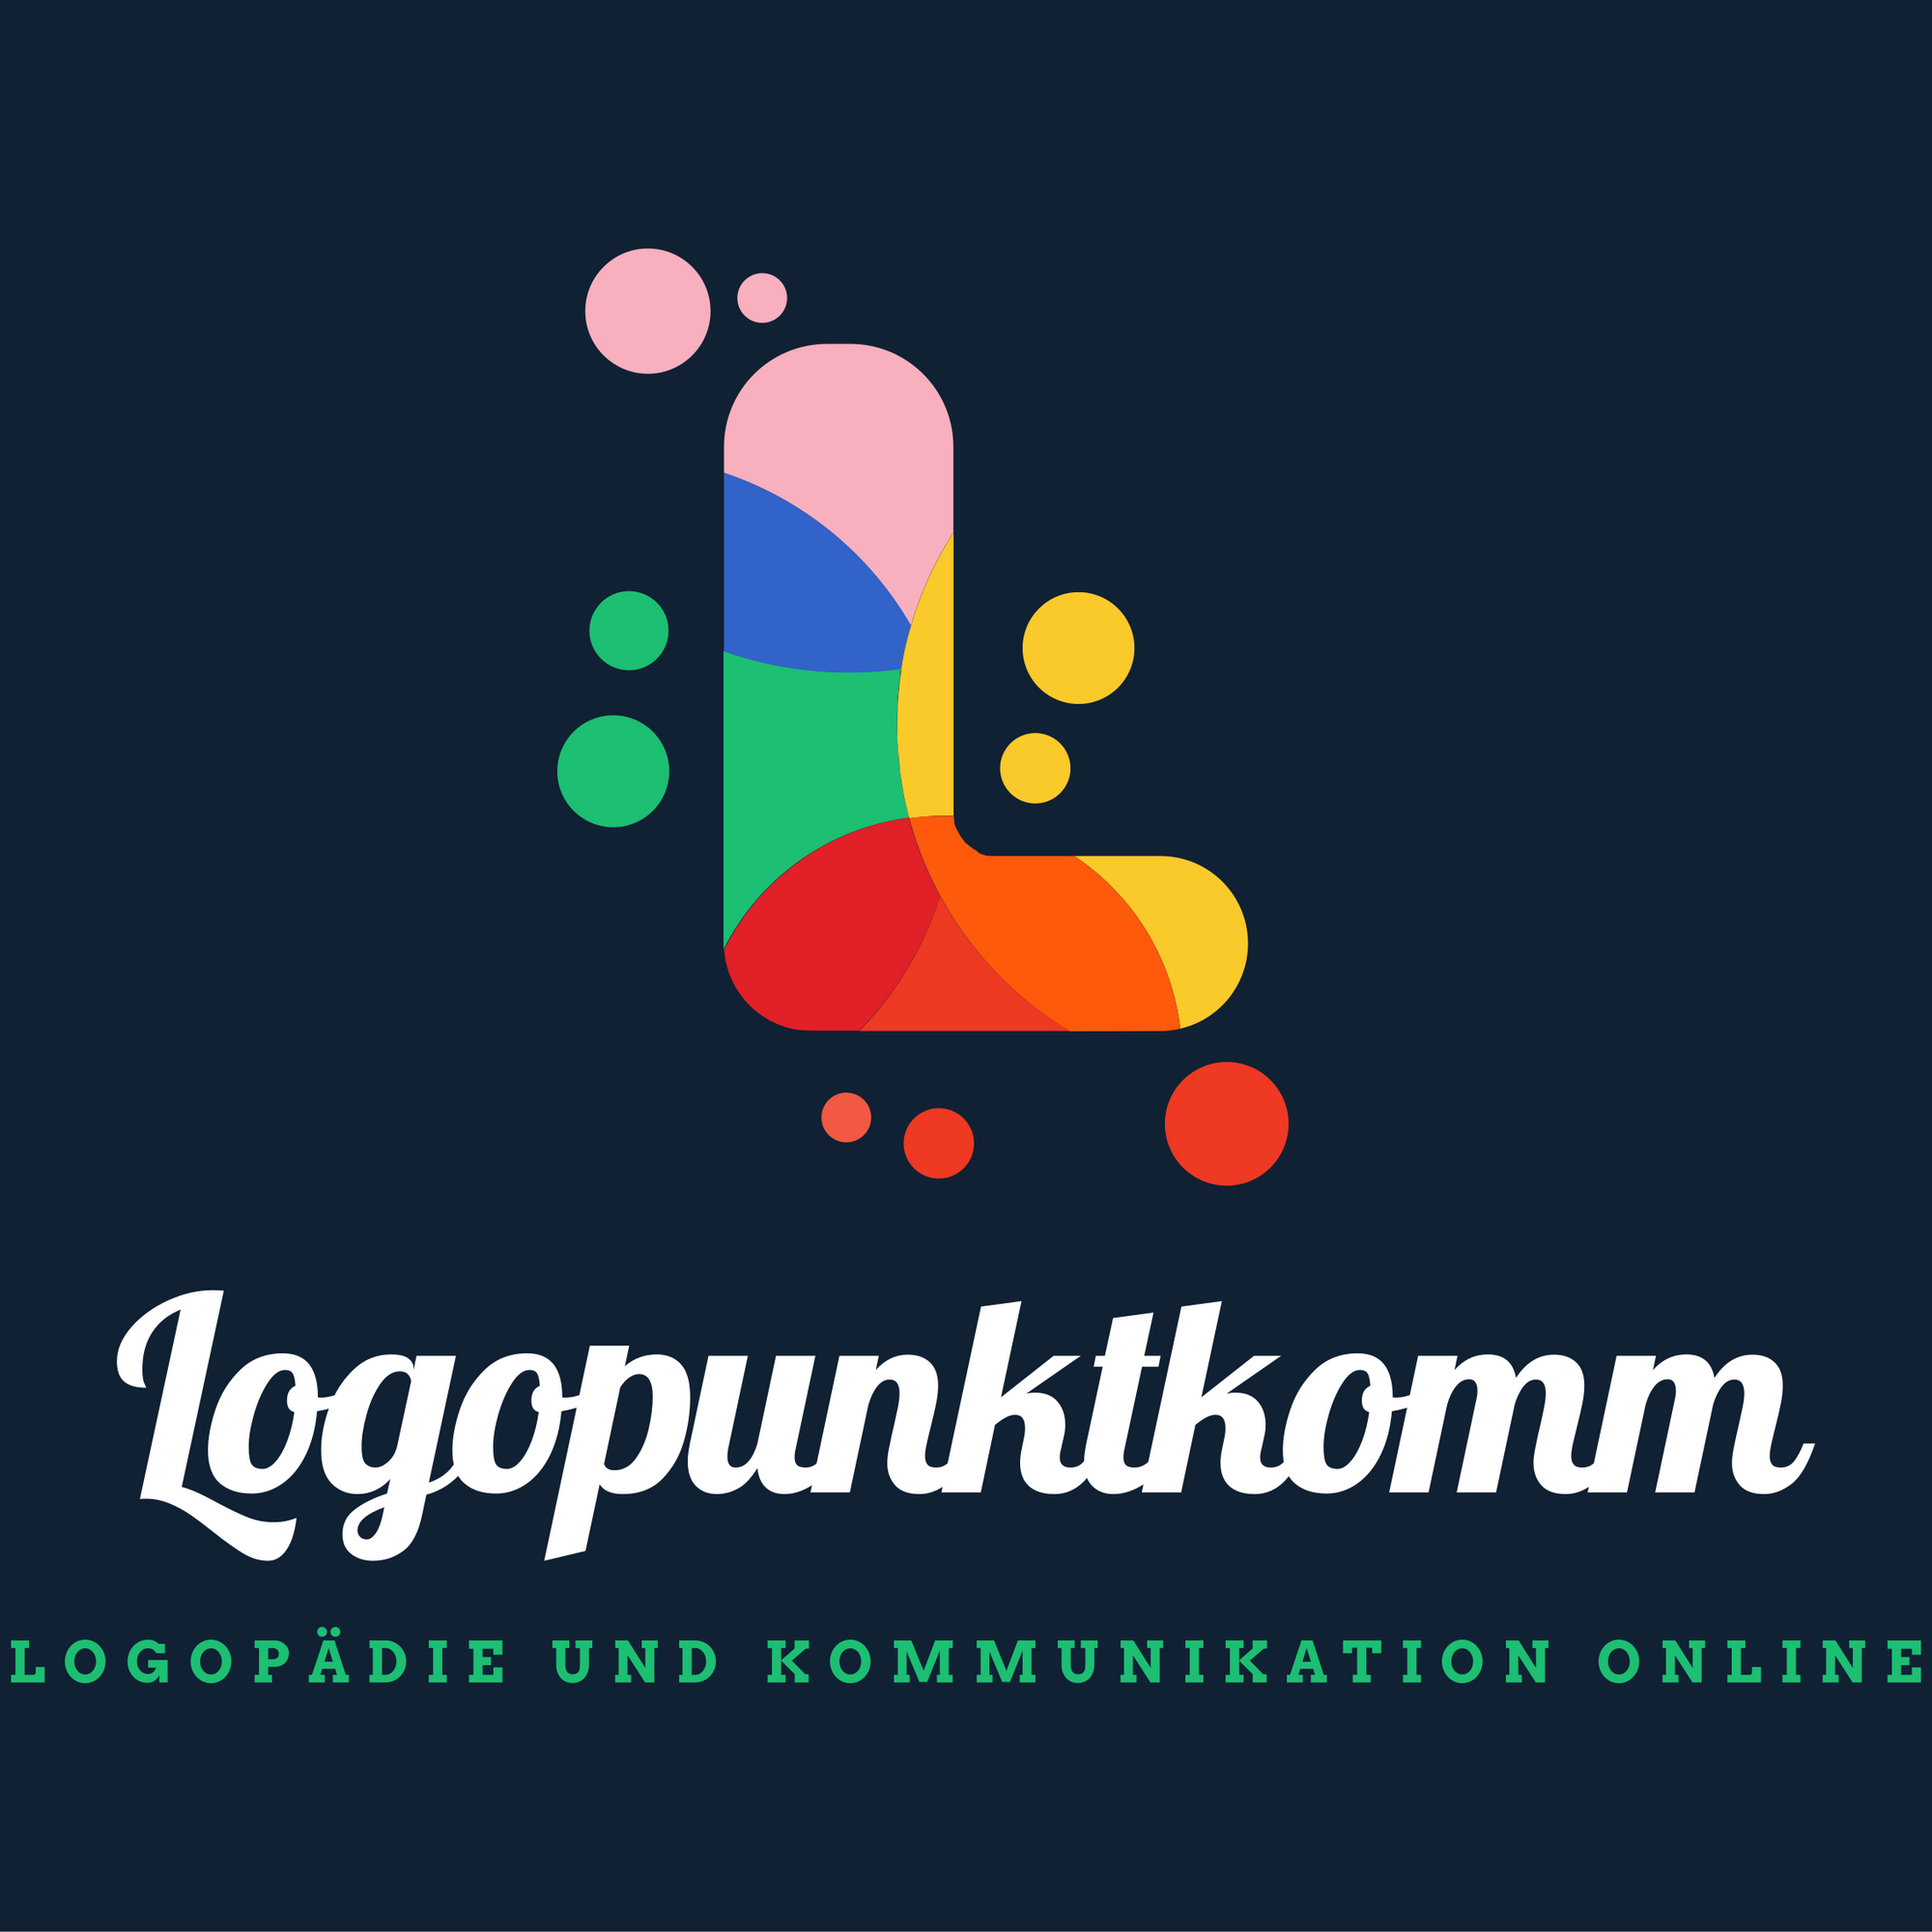 Bild 4 Logopunktkomm - Logopädie digital, innovativ und unkompliziert in Stuttgart